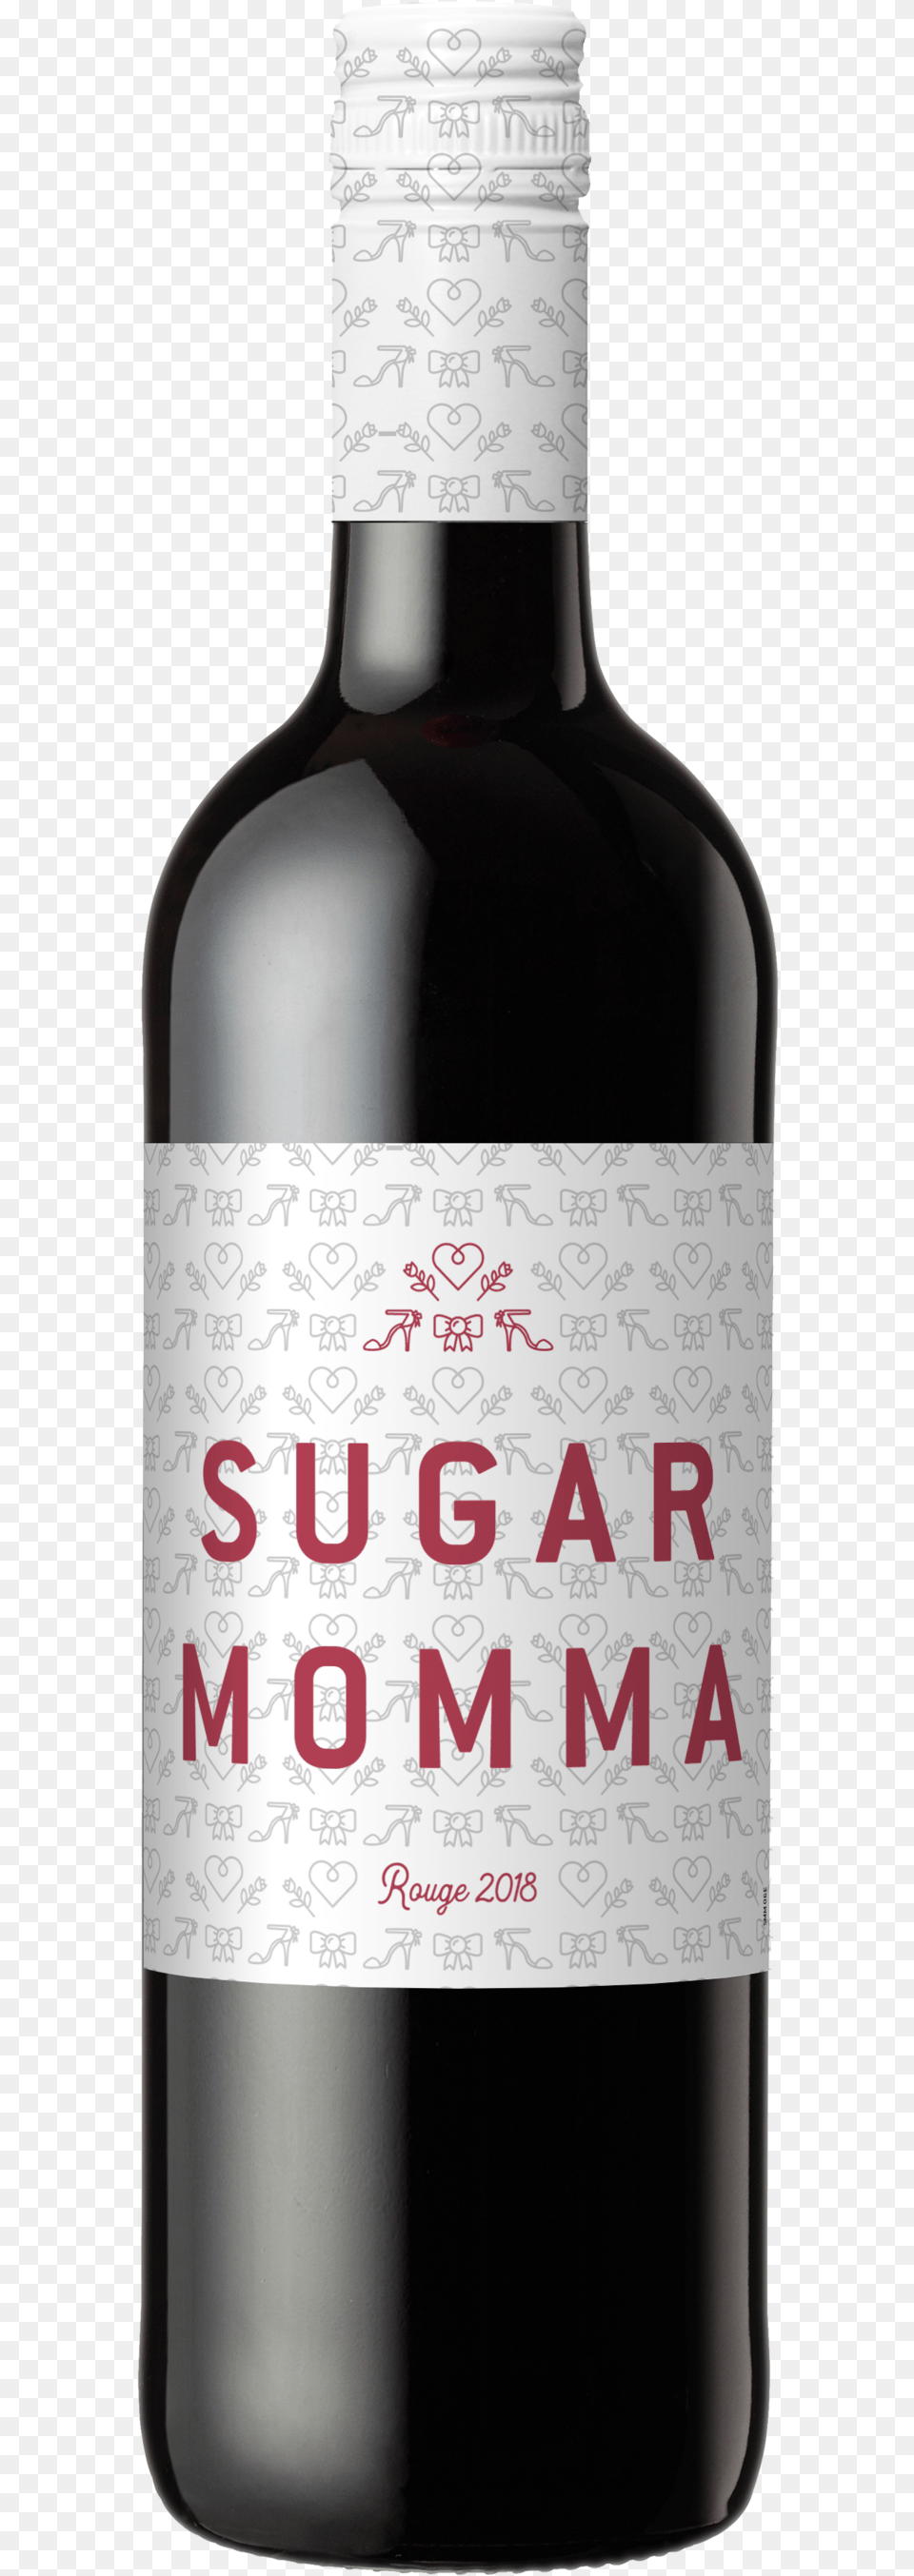 Sugar Momma Bdx Lg Rouge Front Tr Yatir Creek, Alcohol, Beverage, Liquor, Bottle Png